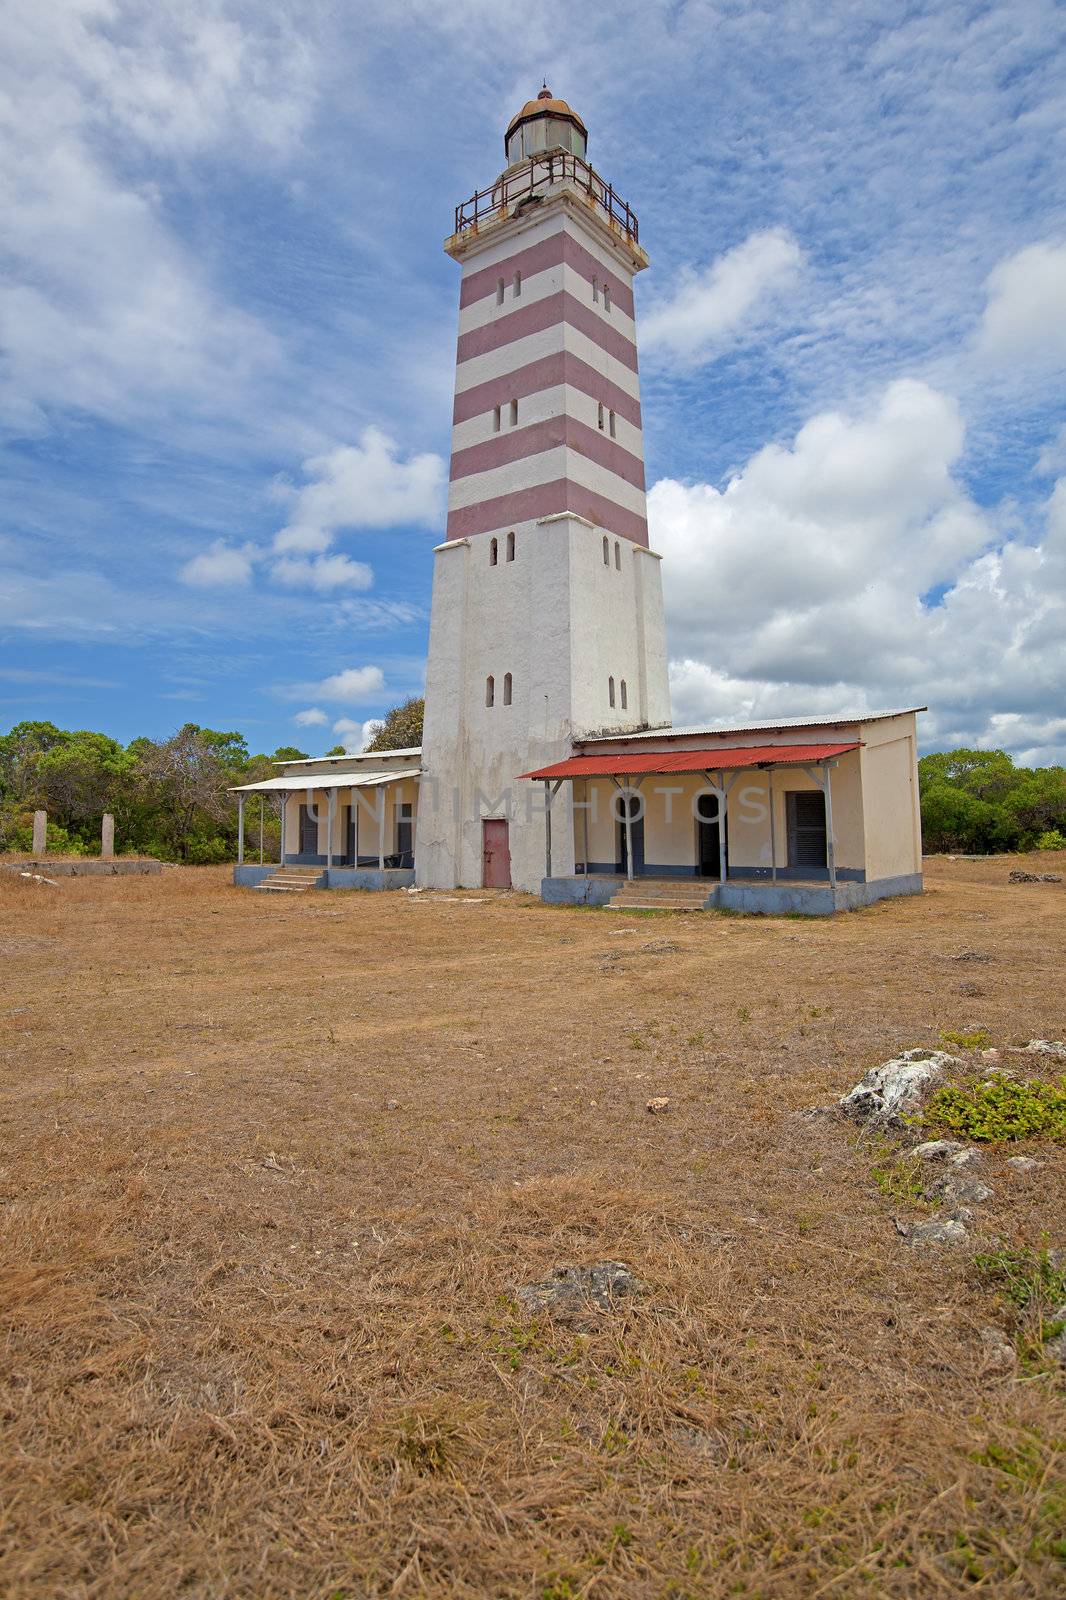 Mafia island lighthouse